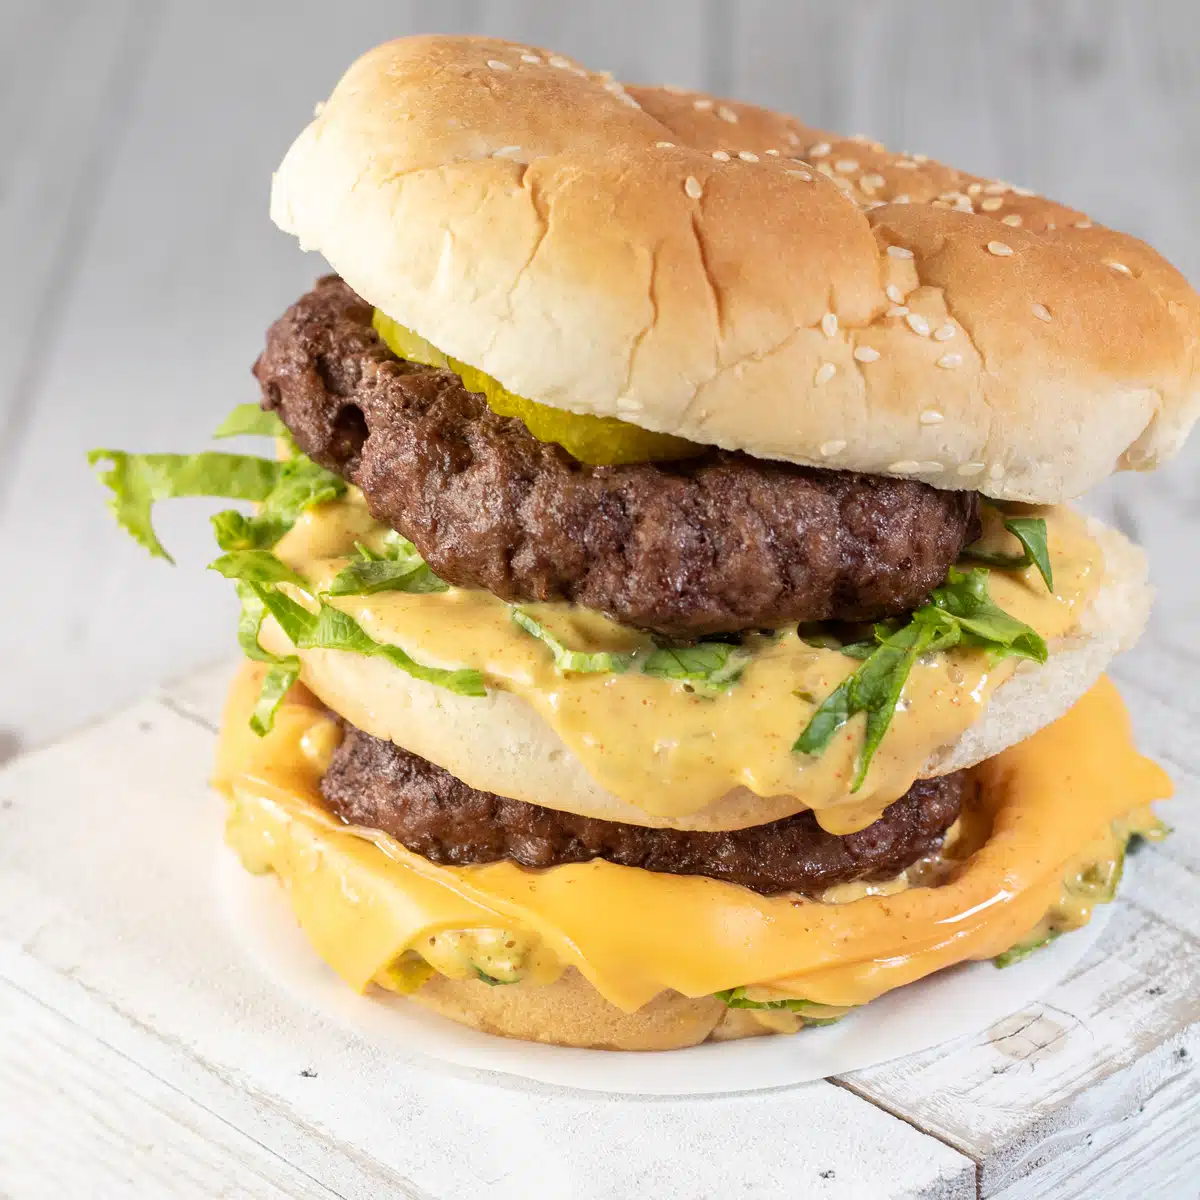 Square image of a homemade Big Mac burger.